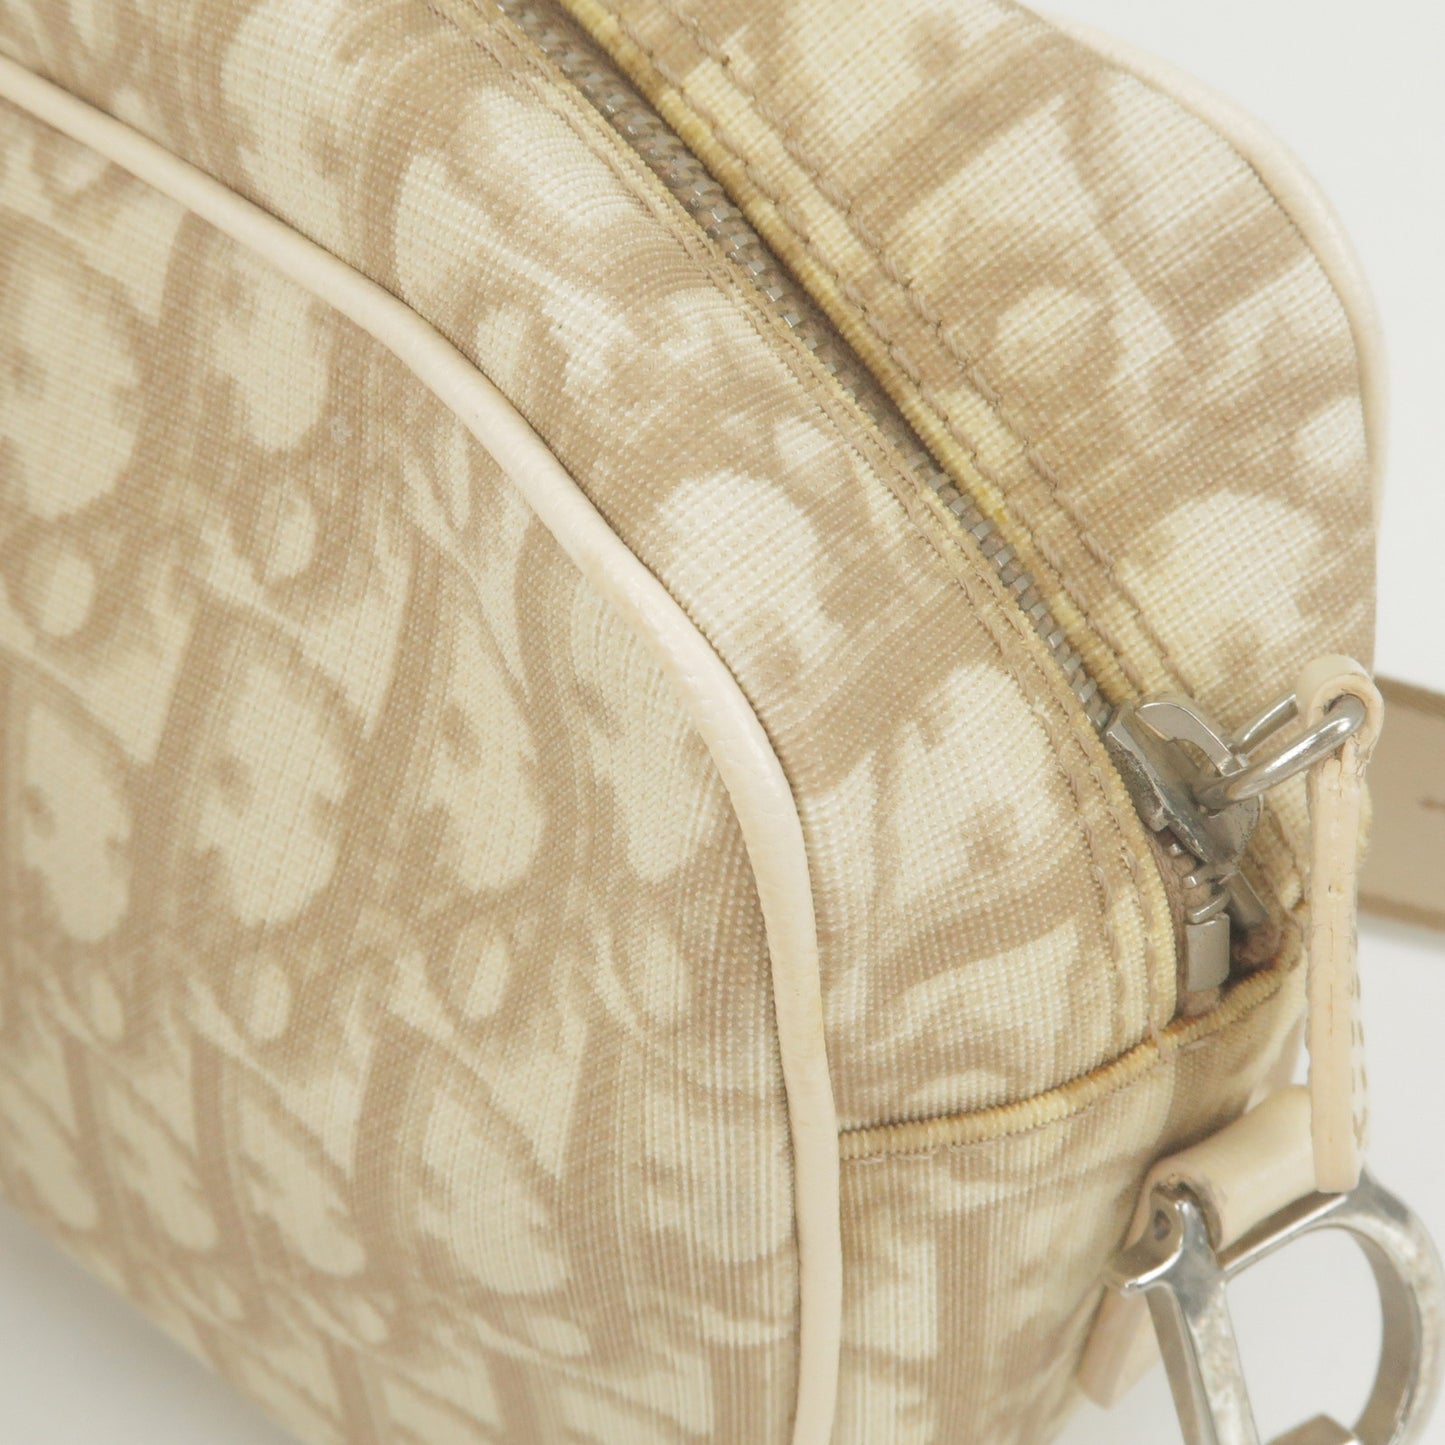 Christian Dior Trotter PVC Leather Embroidered Shoulder Bag Beige